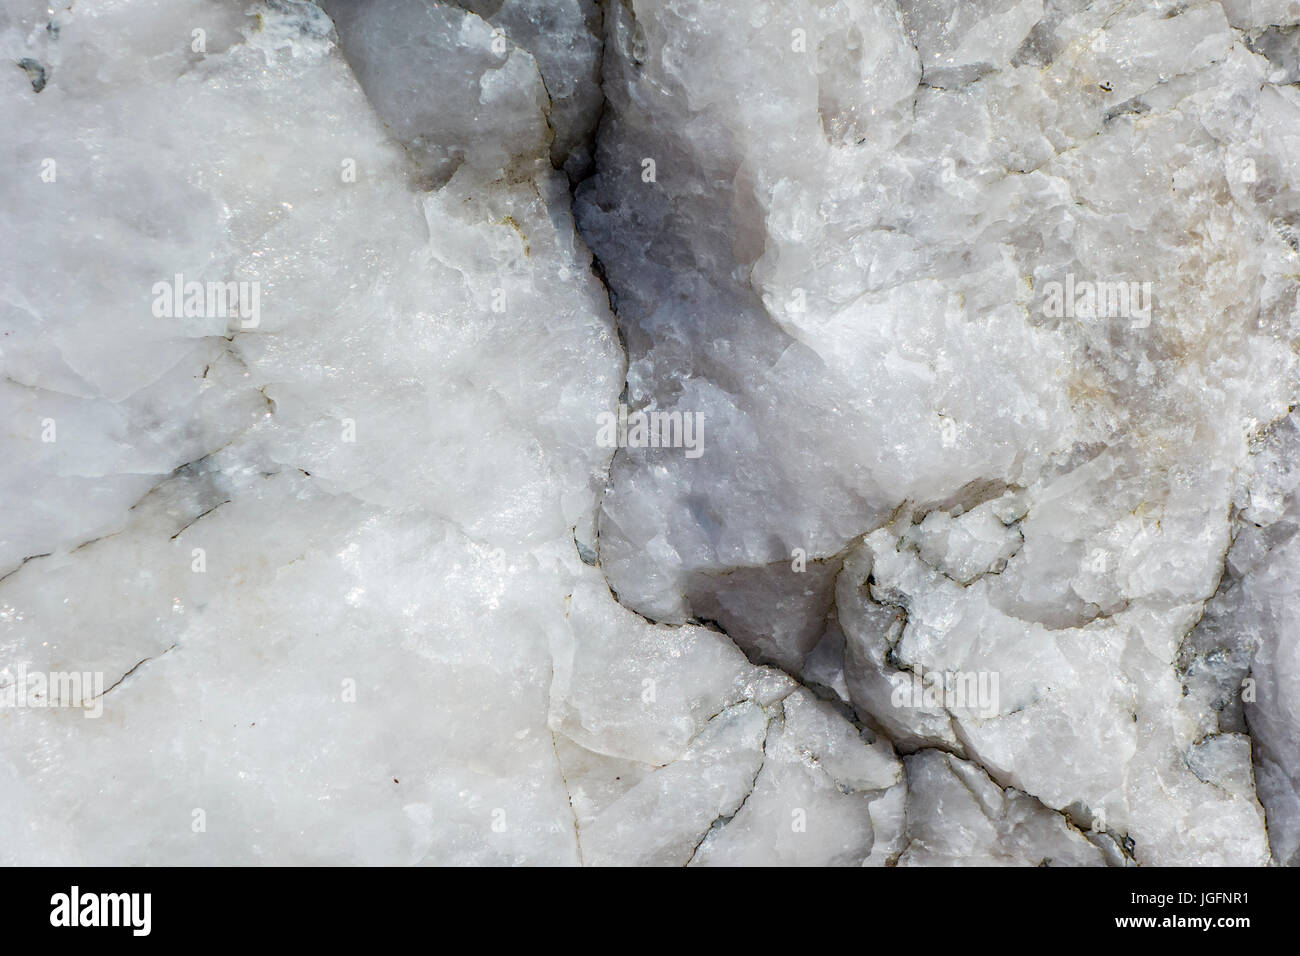 Quarz, Mineral bestehend aus Silizium und Sauerstoff und Halbedeledelstein, Nahaufnahme zeigt körnige Struktur und Textur Stockfoto